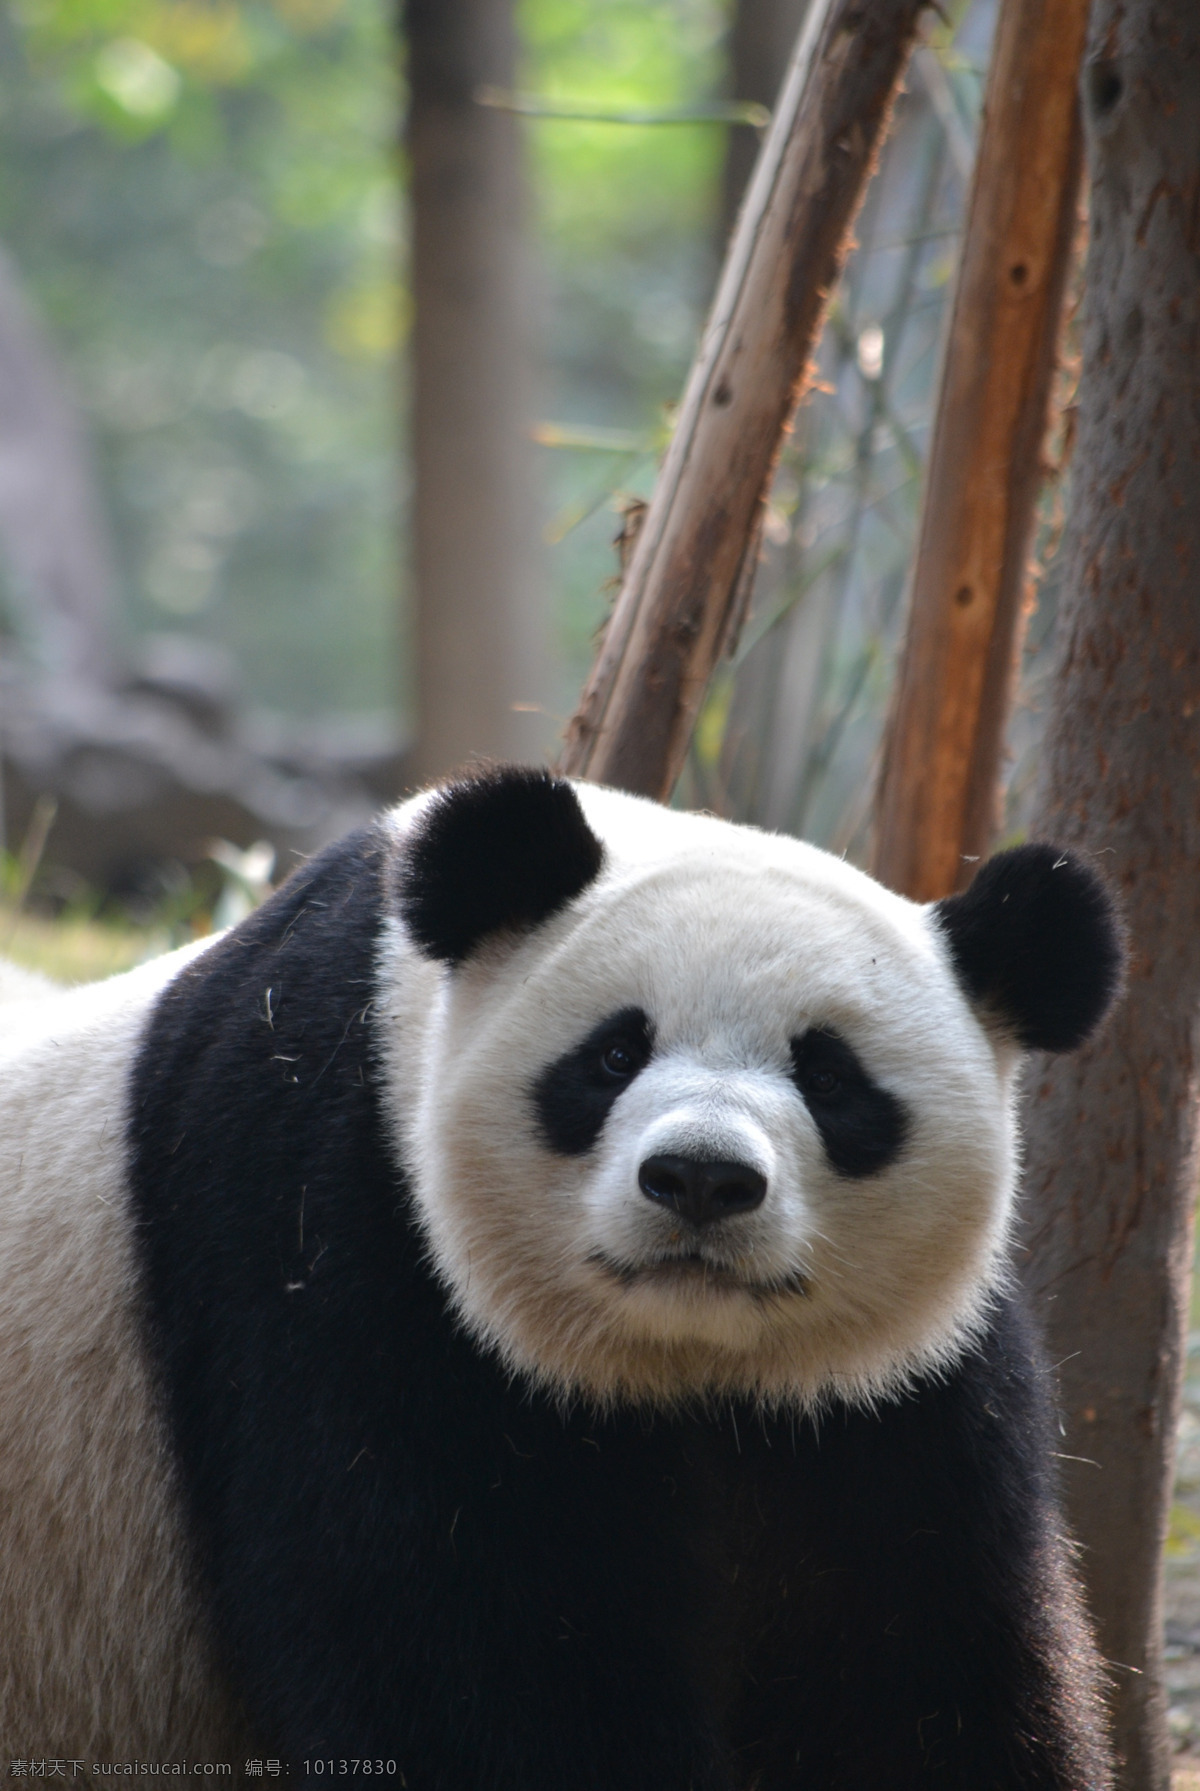 憨态 可爱 大熊猫 熊猫 国宝熊猫 国宝 食铁兽 动物园 保护动物 珍惜动物 黑白照片 憨态可爱 生物世界 野生动物